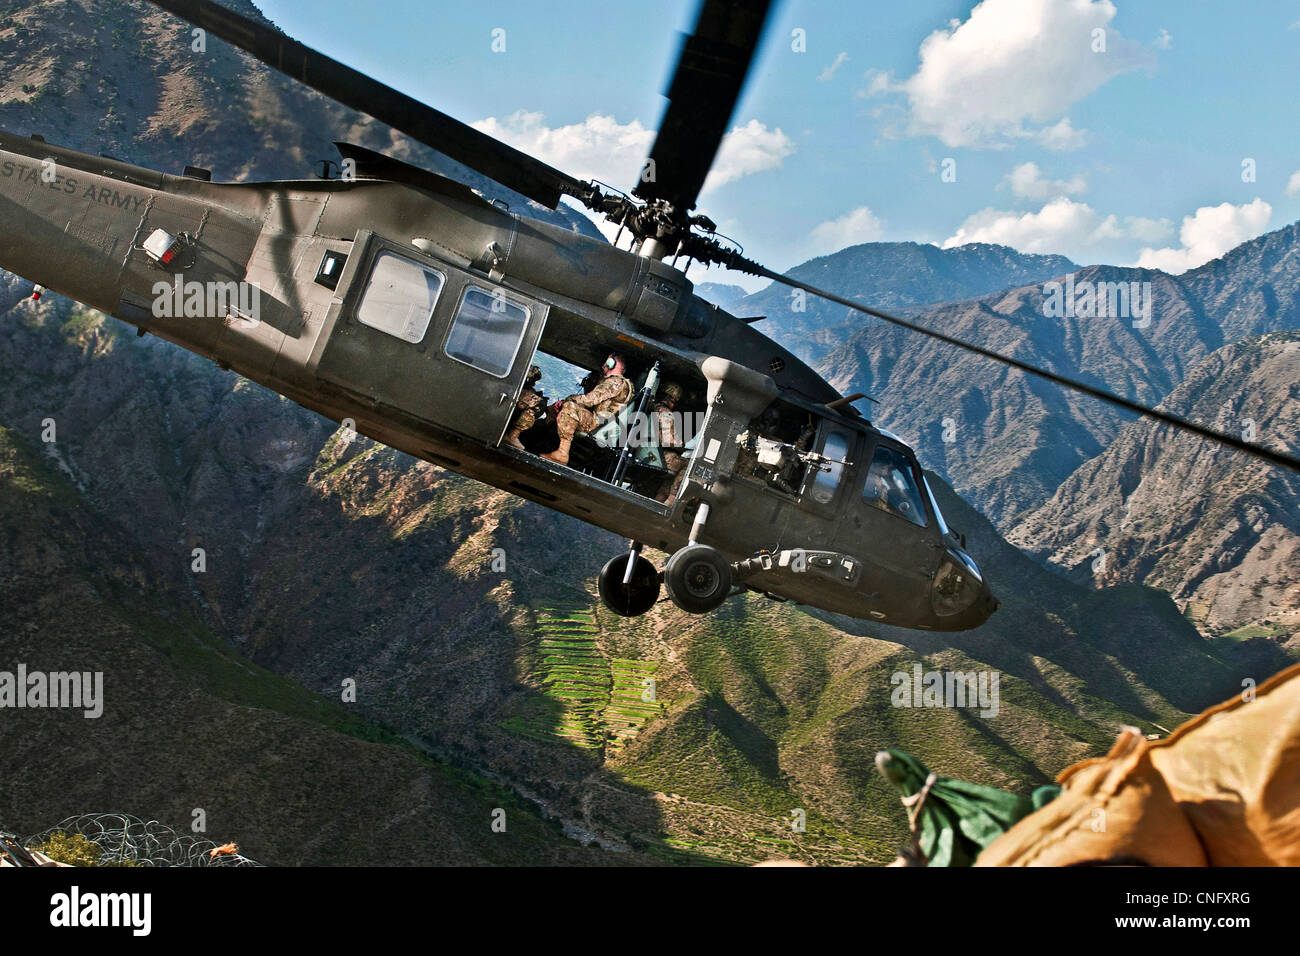 Un UH-60 Black Hawk elicottero decolla da montagna avamposto di combattimento Bari Alai Aprile 3, 2012 a nord-est di Jalalabad, Afghanistan Foto Stock